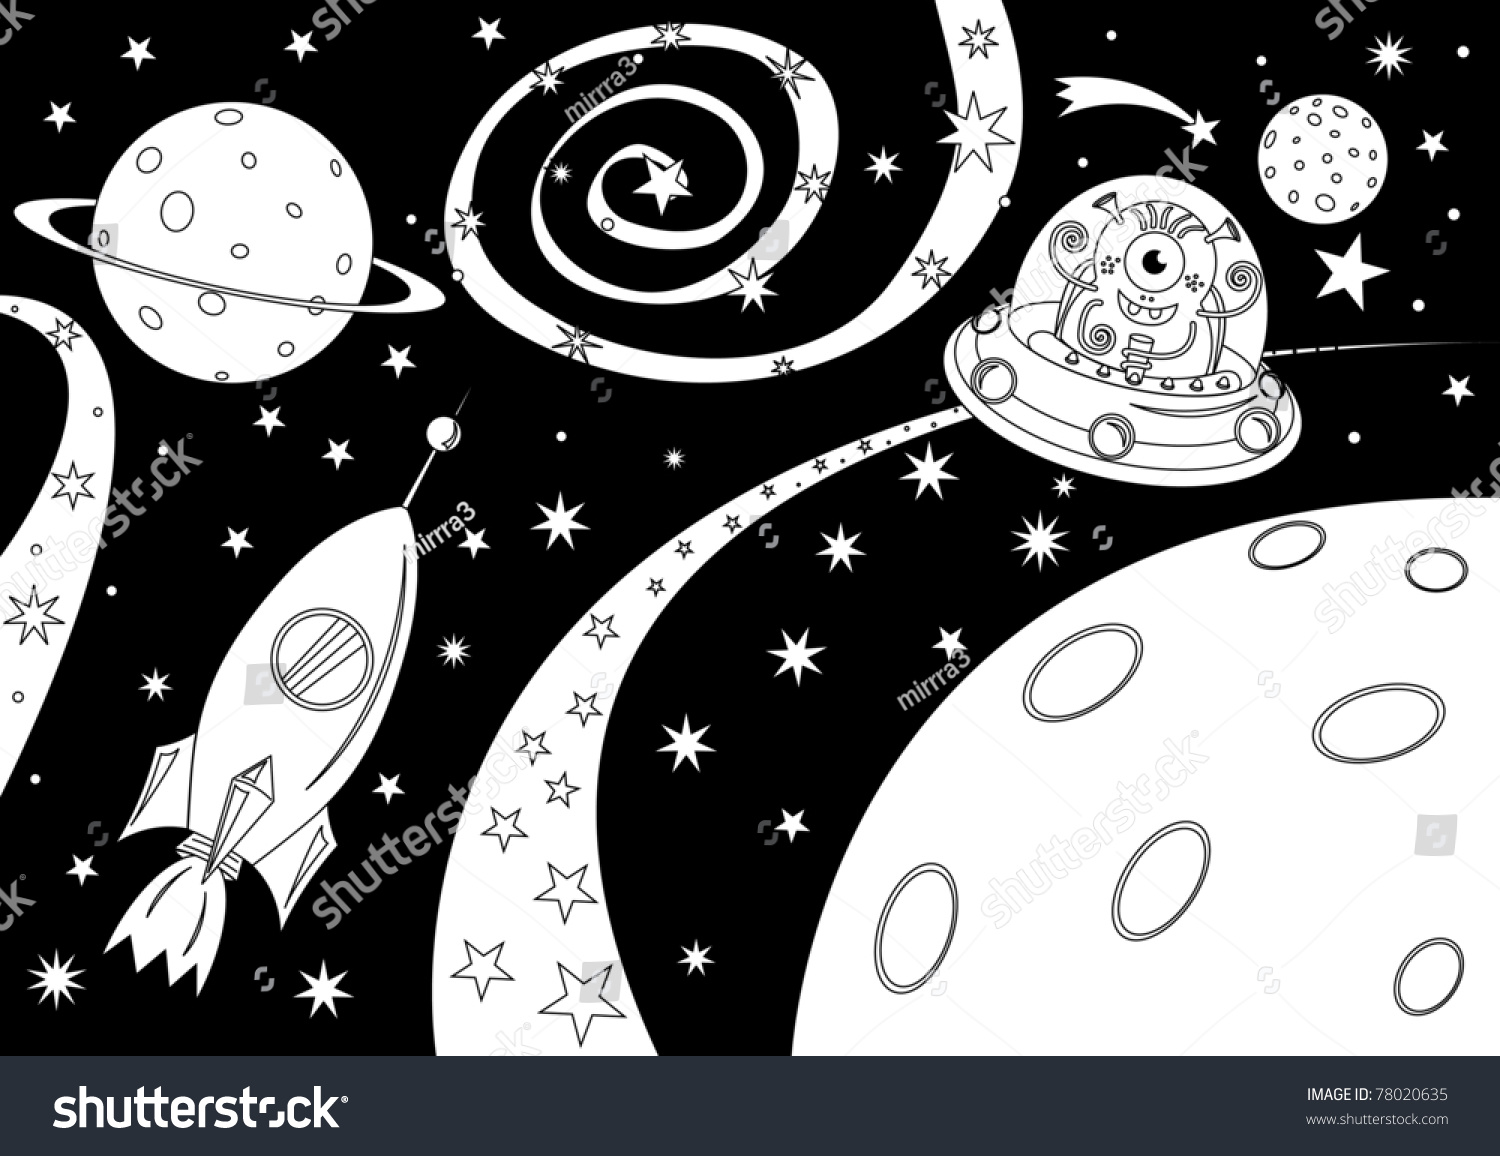 Рисунок на тему космос чб